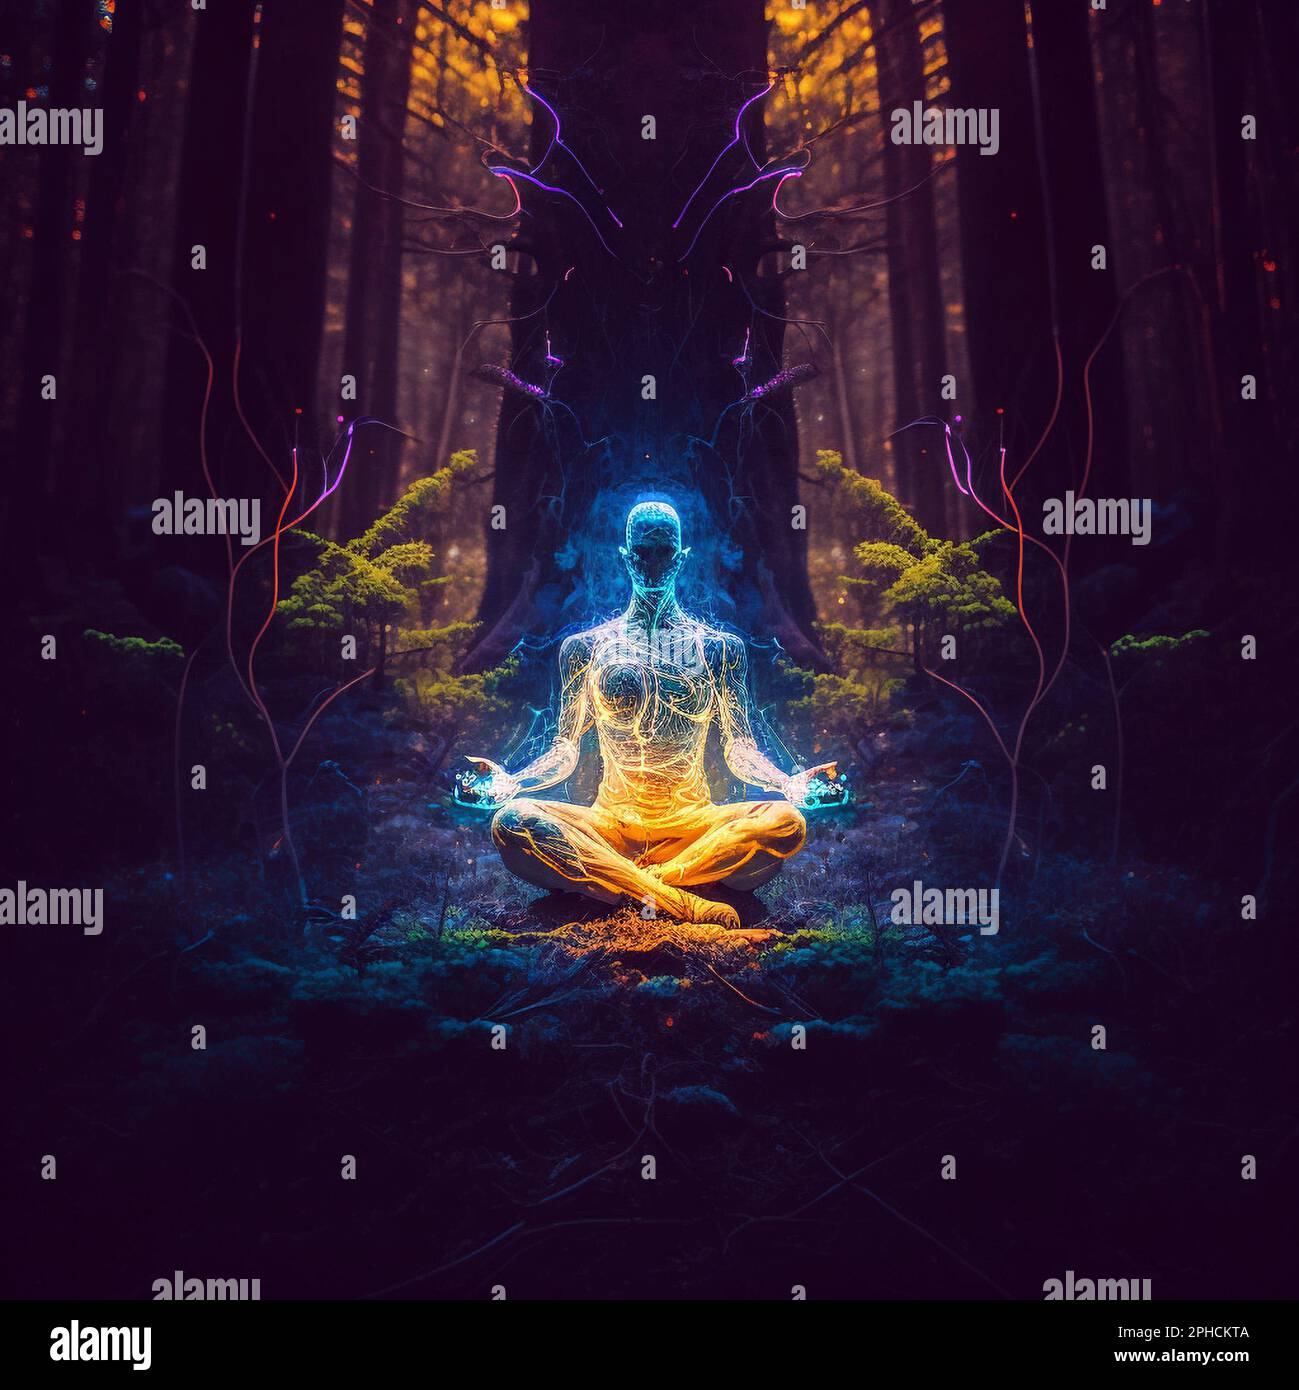 Farbenfrohe Darstellung eines Yogi in Meditationsposition mit Chakren, die Licht aussenden Stockfoto